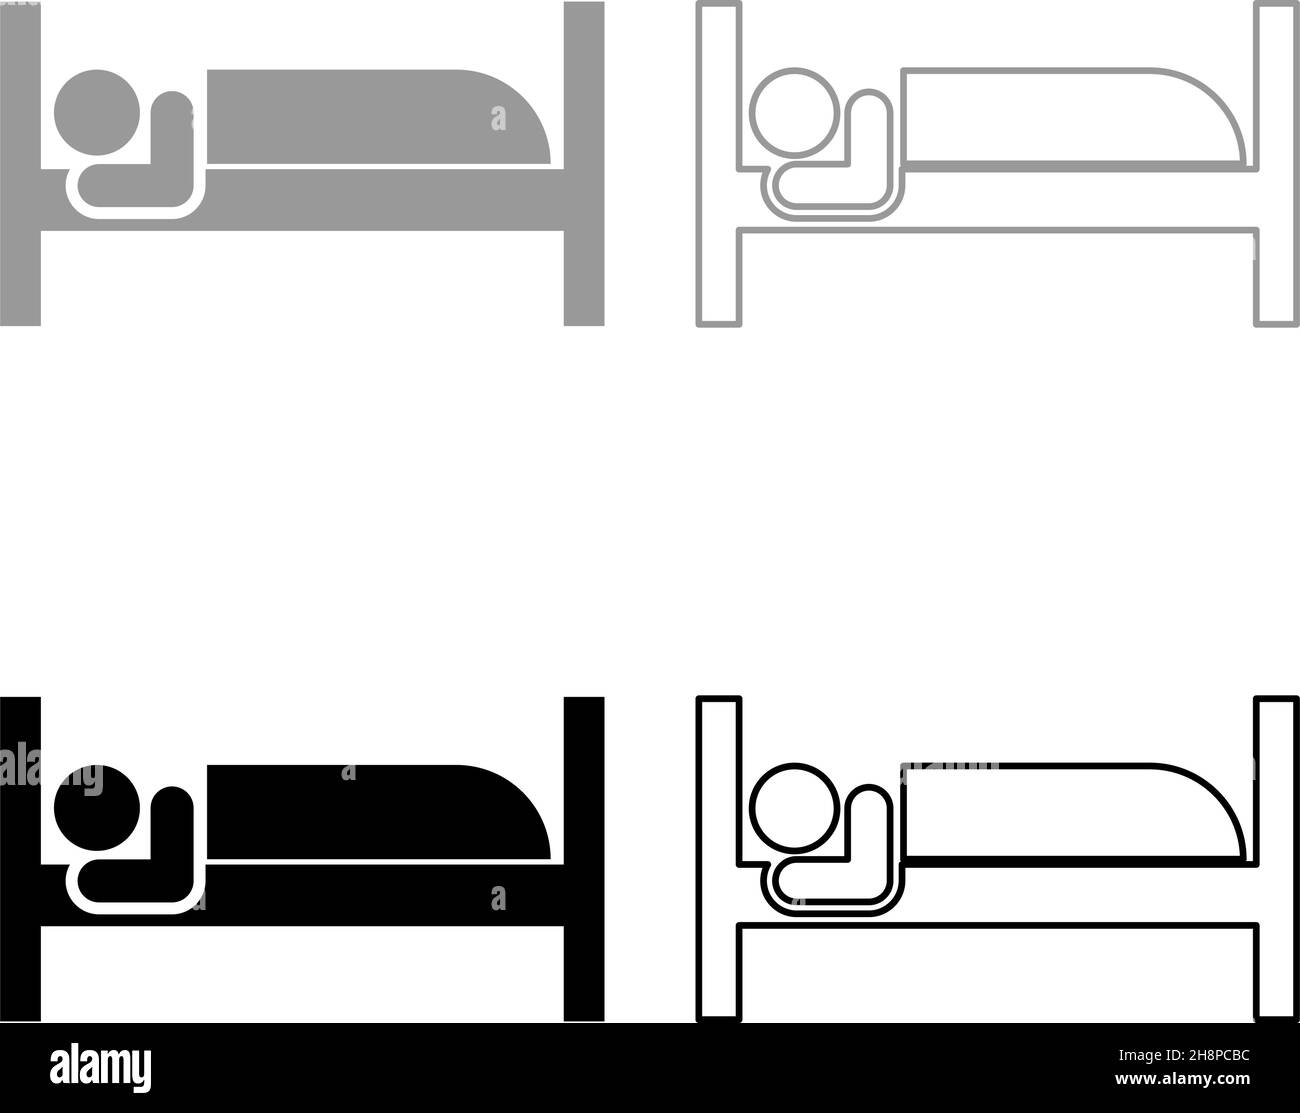 Mann liegt auf Bett schlafen Konzept Hotel Zeichen gesetzt Symbol grau schwarz Farbe Vektor Illustration Bild einfach flachen Stil solide füllen Kontur Kontur Linie dünn Stock Vektor